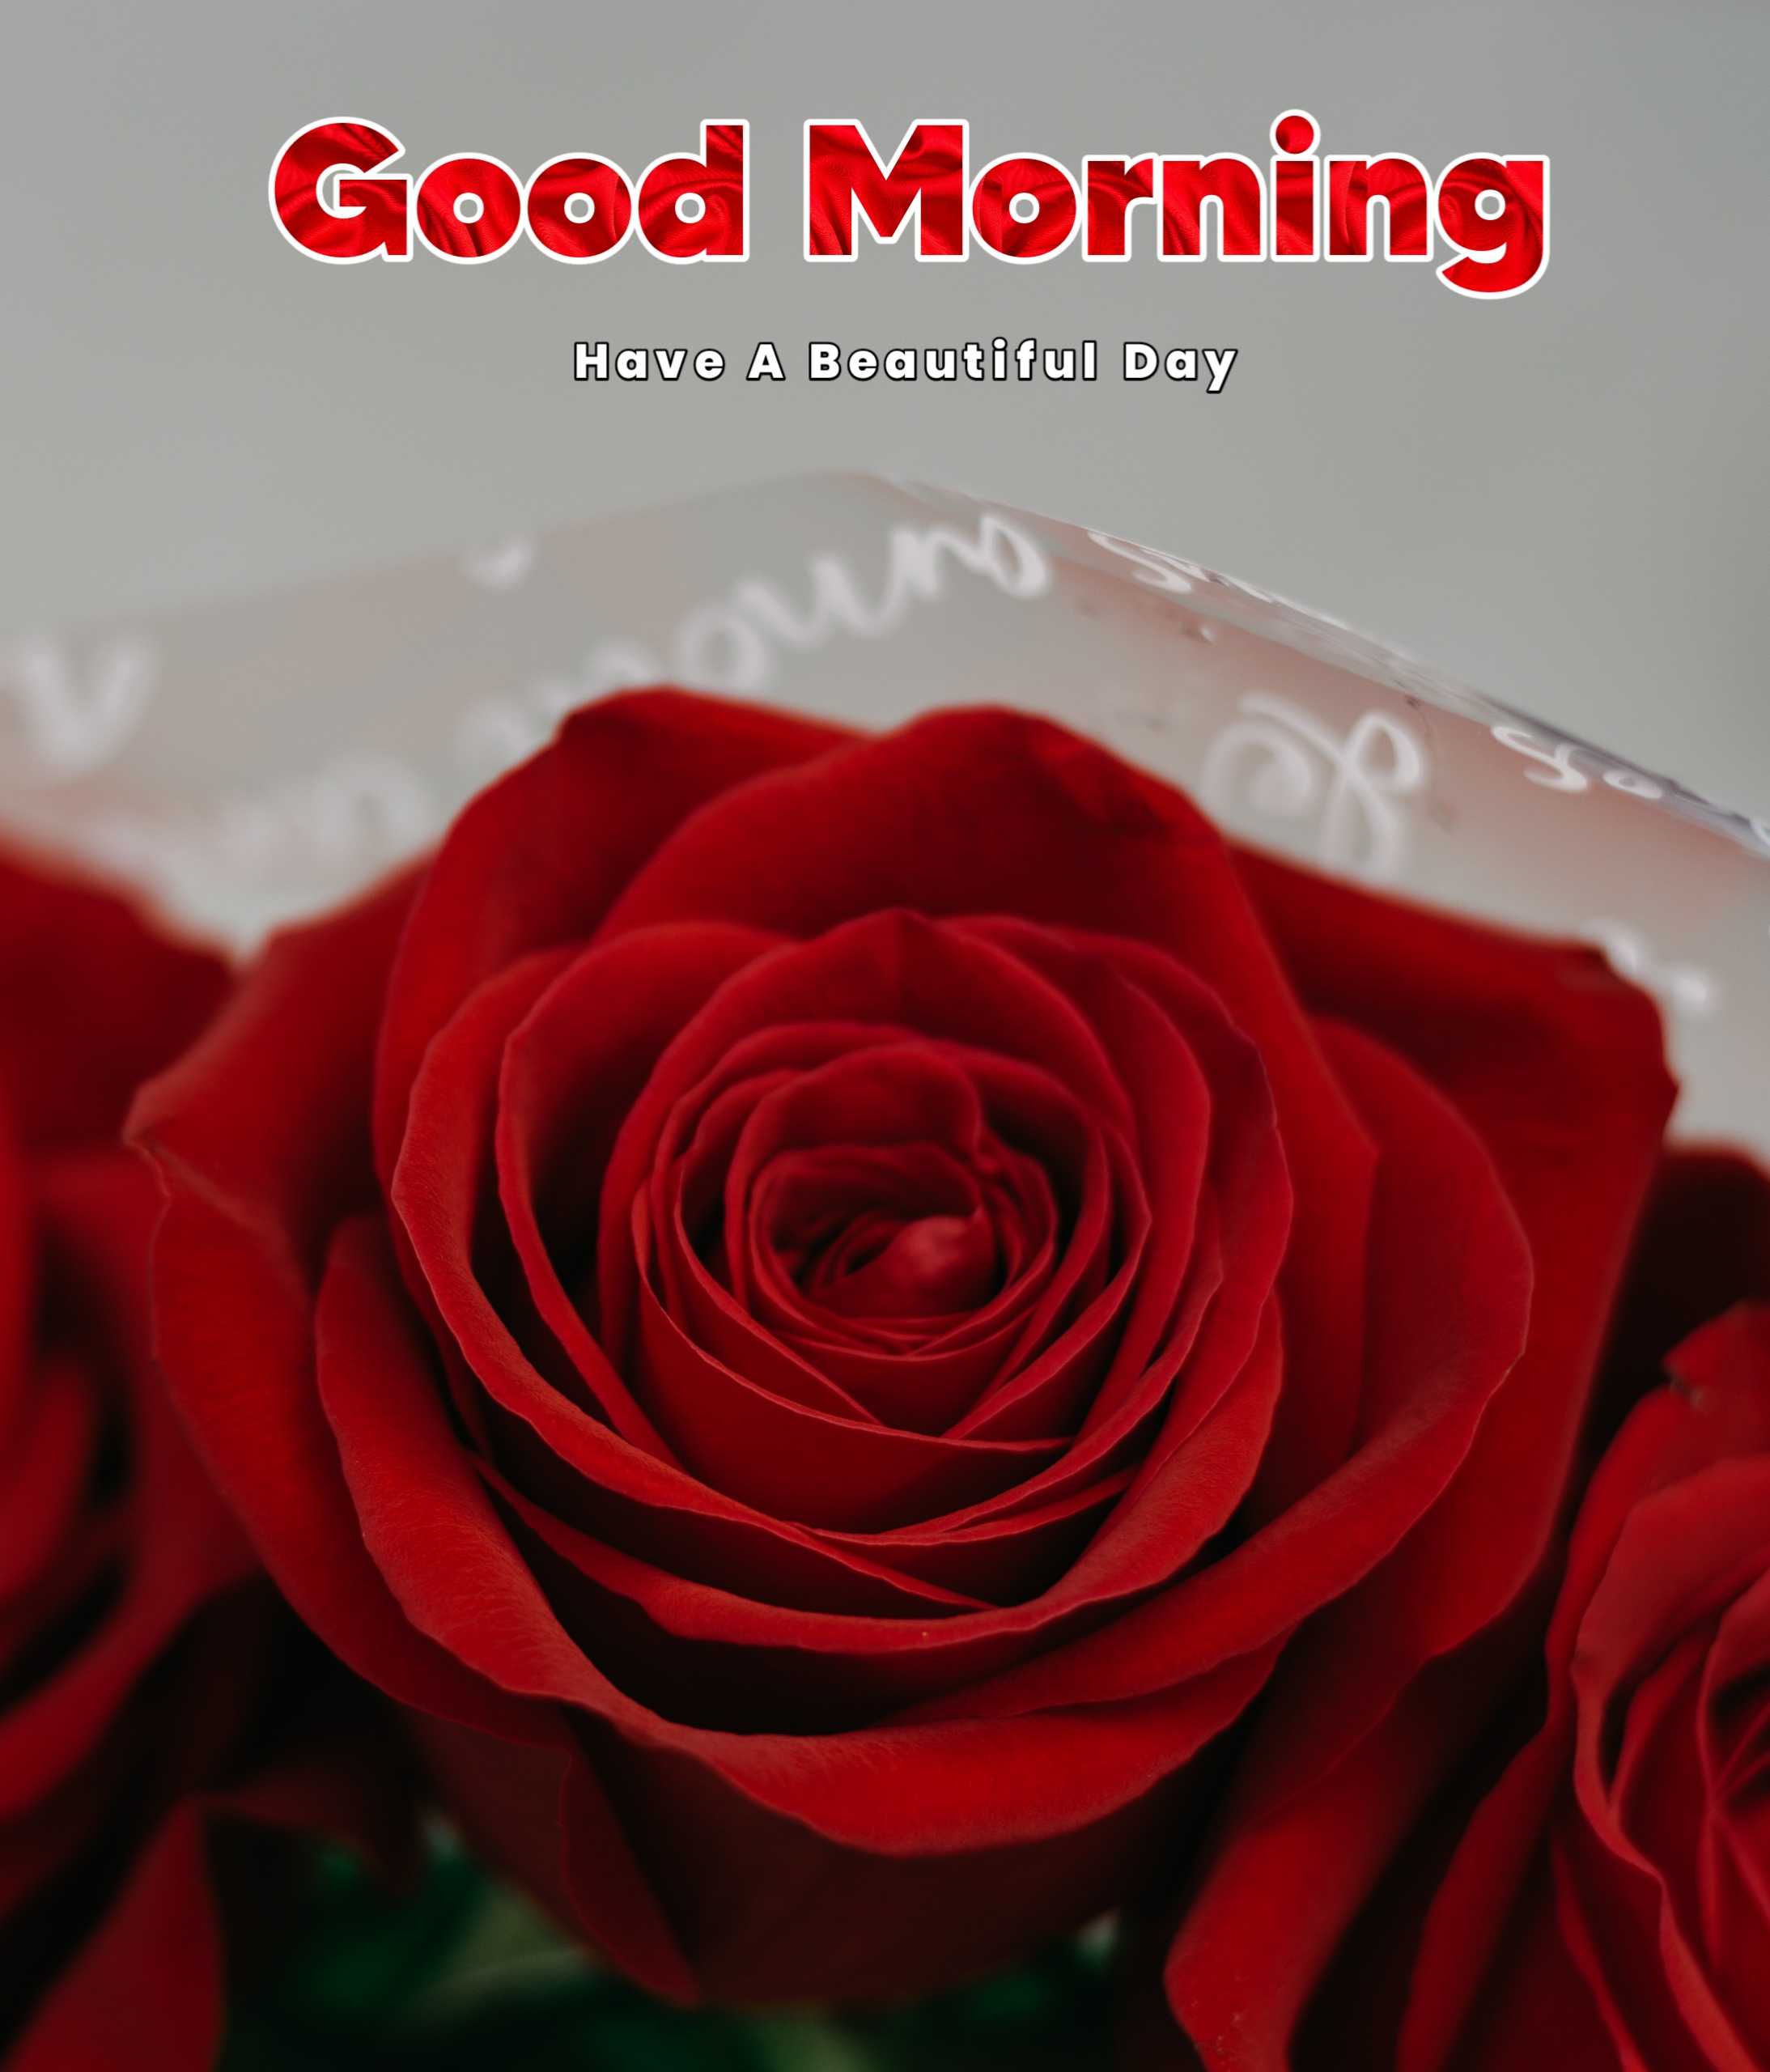 Good Morning Rose Image Free Download 